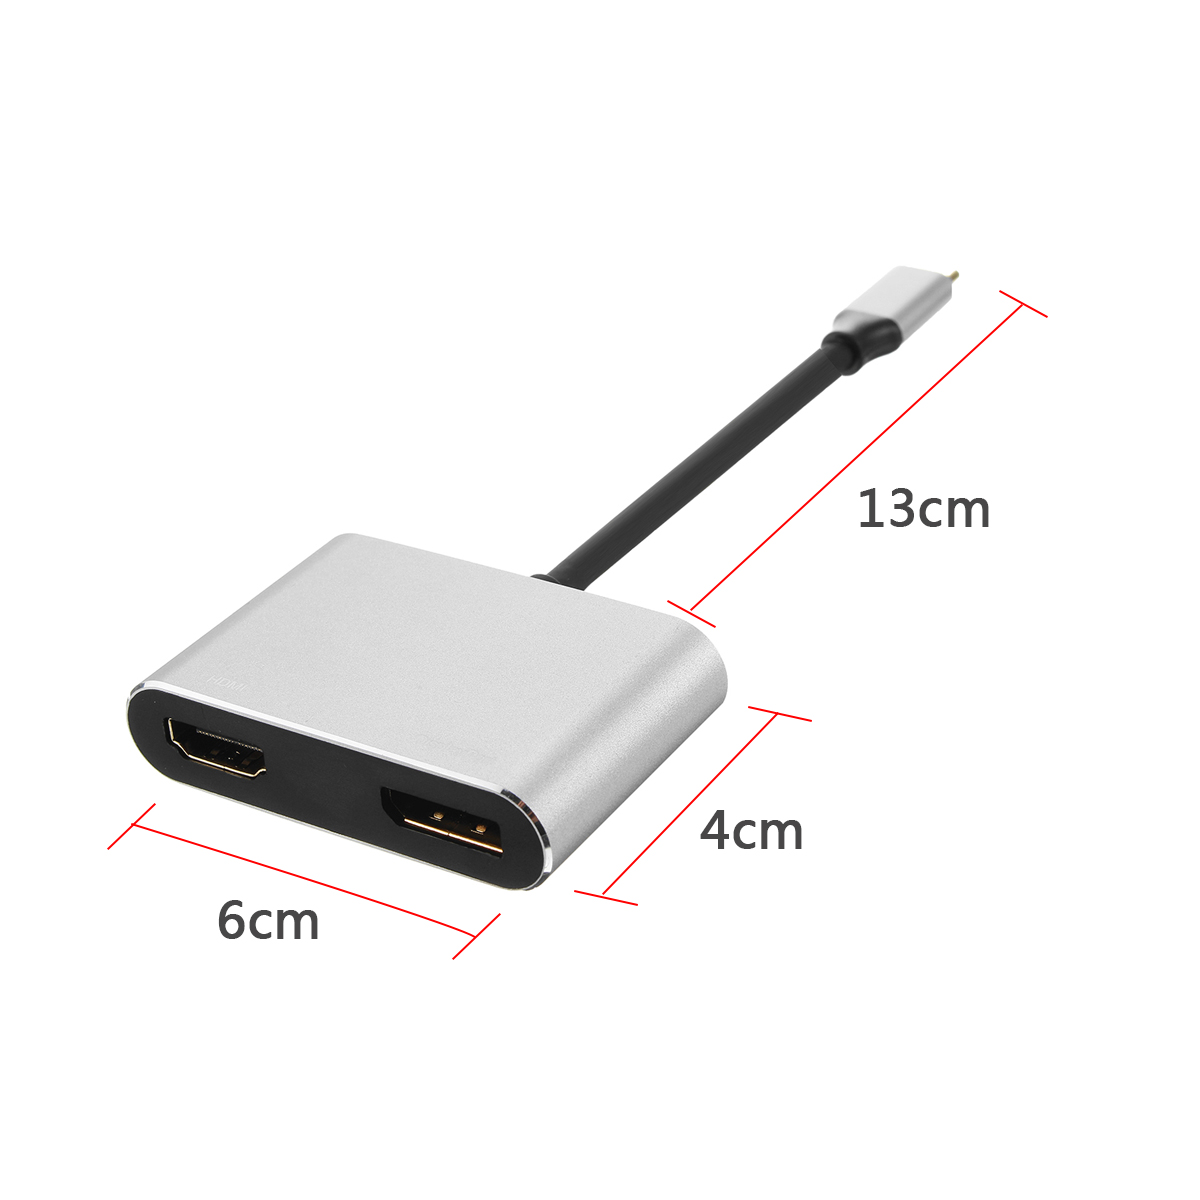 3-Hub-USB-C-31-Type-c-to-Display-Port-DP-4k-60Hz-HDMI-30Hz-Adapter-for-Smartphone-TV-Macbook-1264195